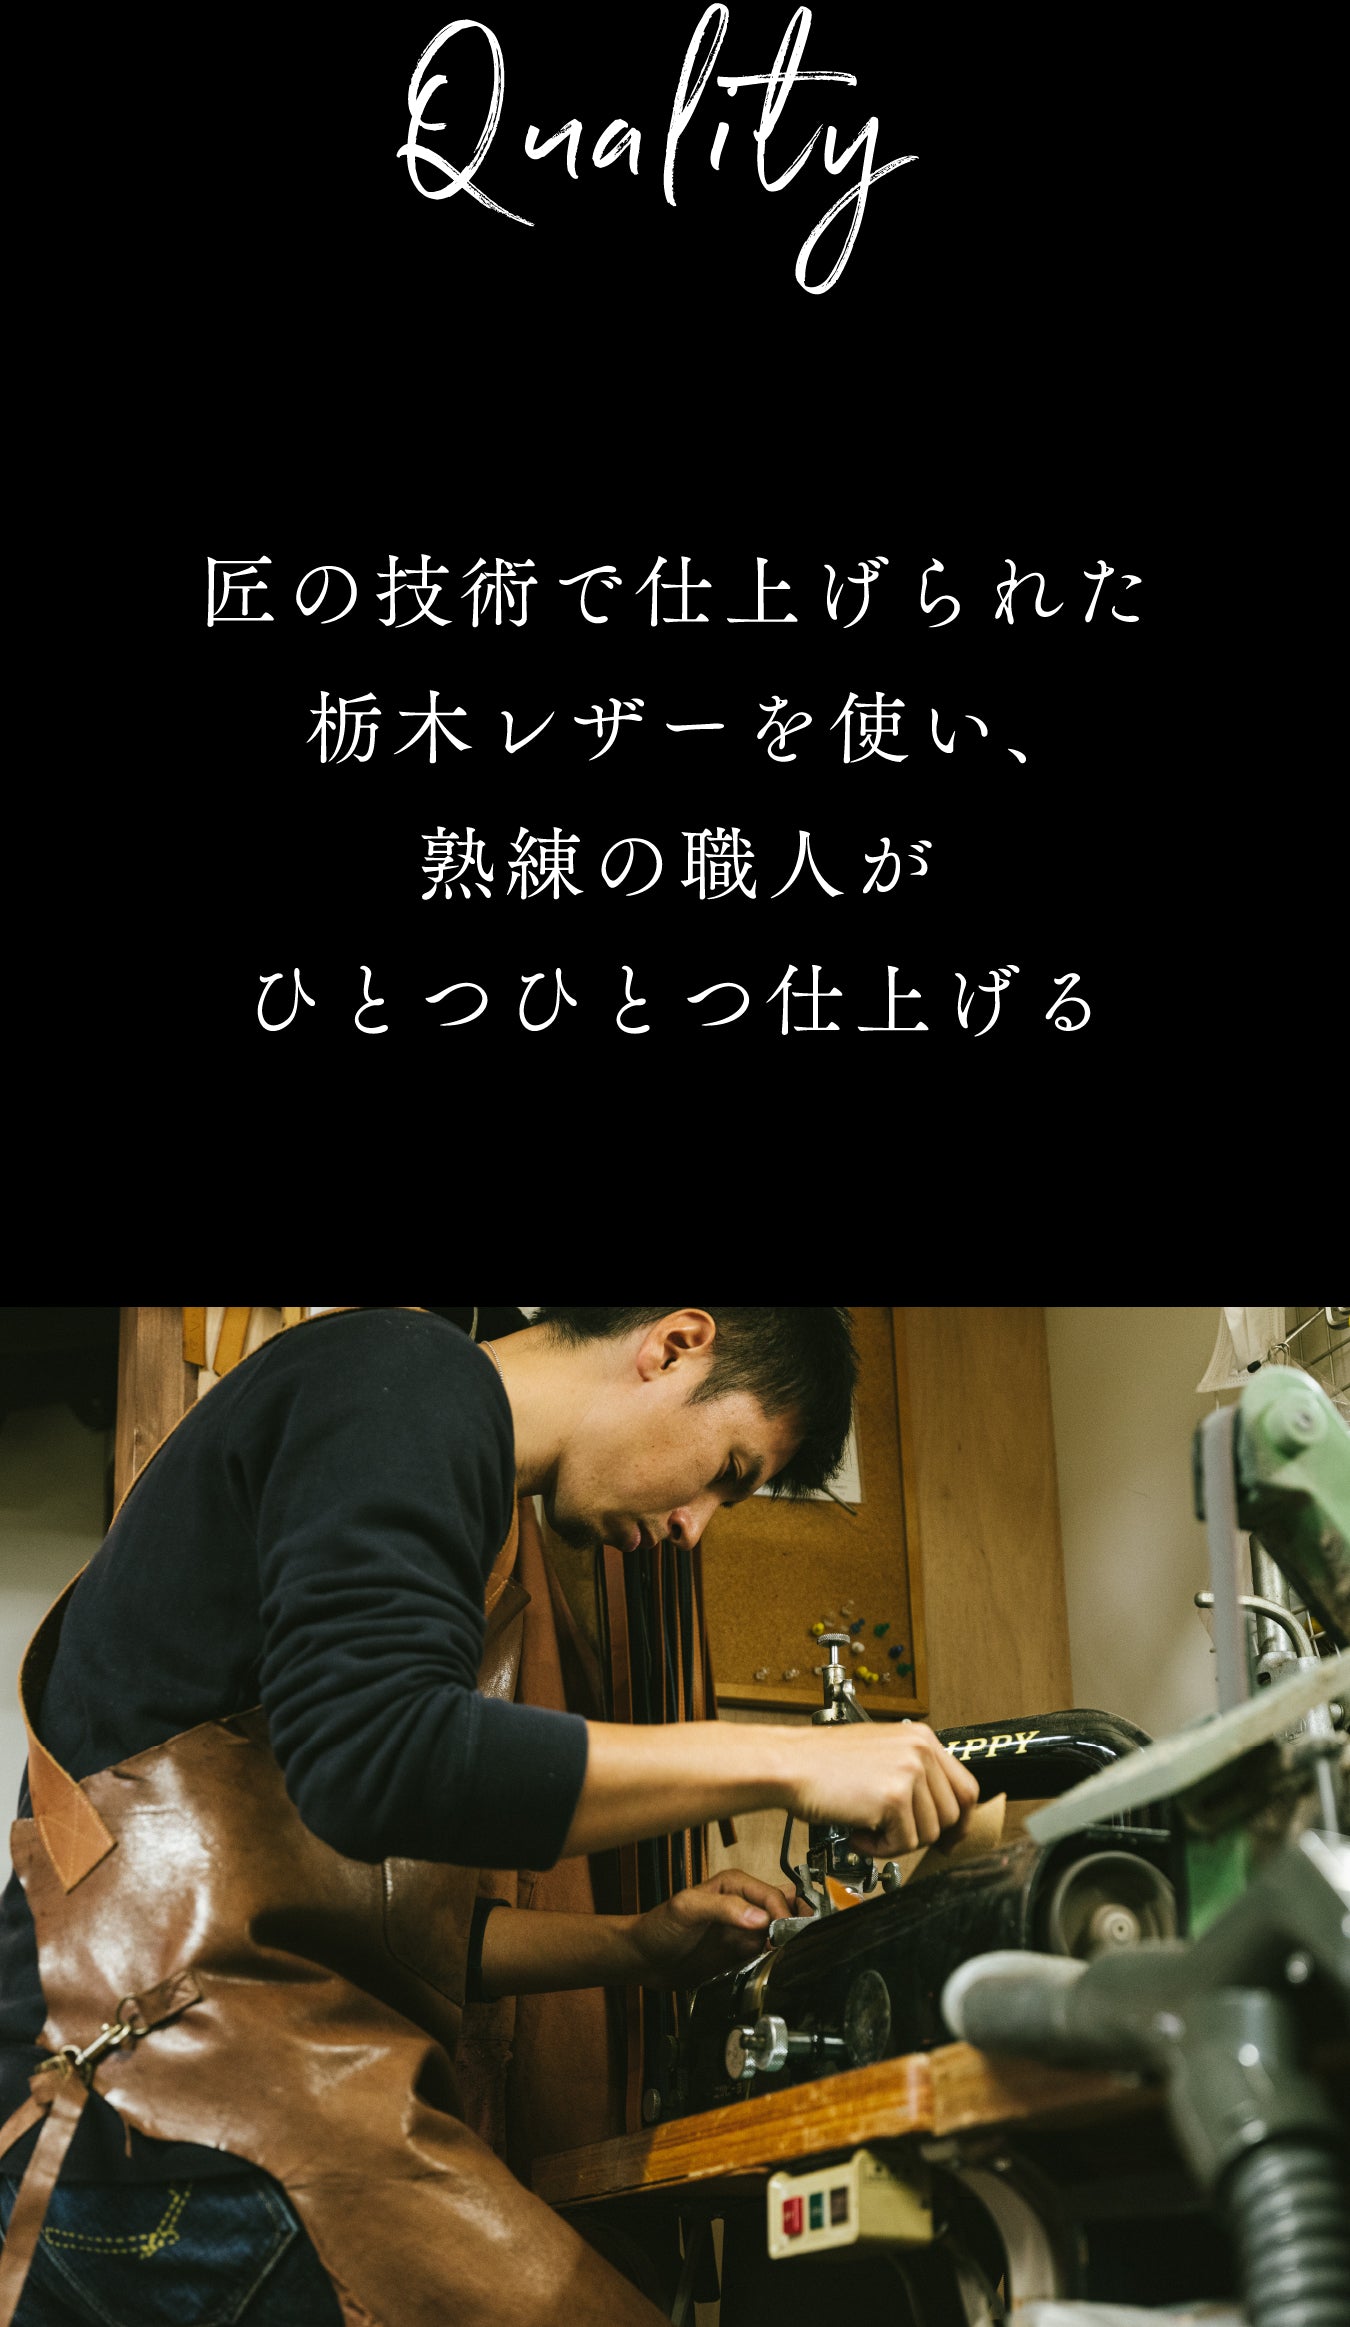 匠の技術で仕上げられた栃木レザーを使い、熟練の職人がひとつひとつ仕上げる